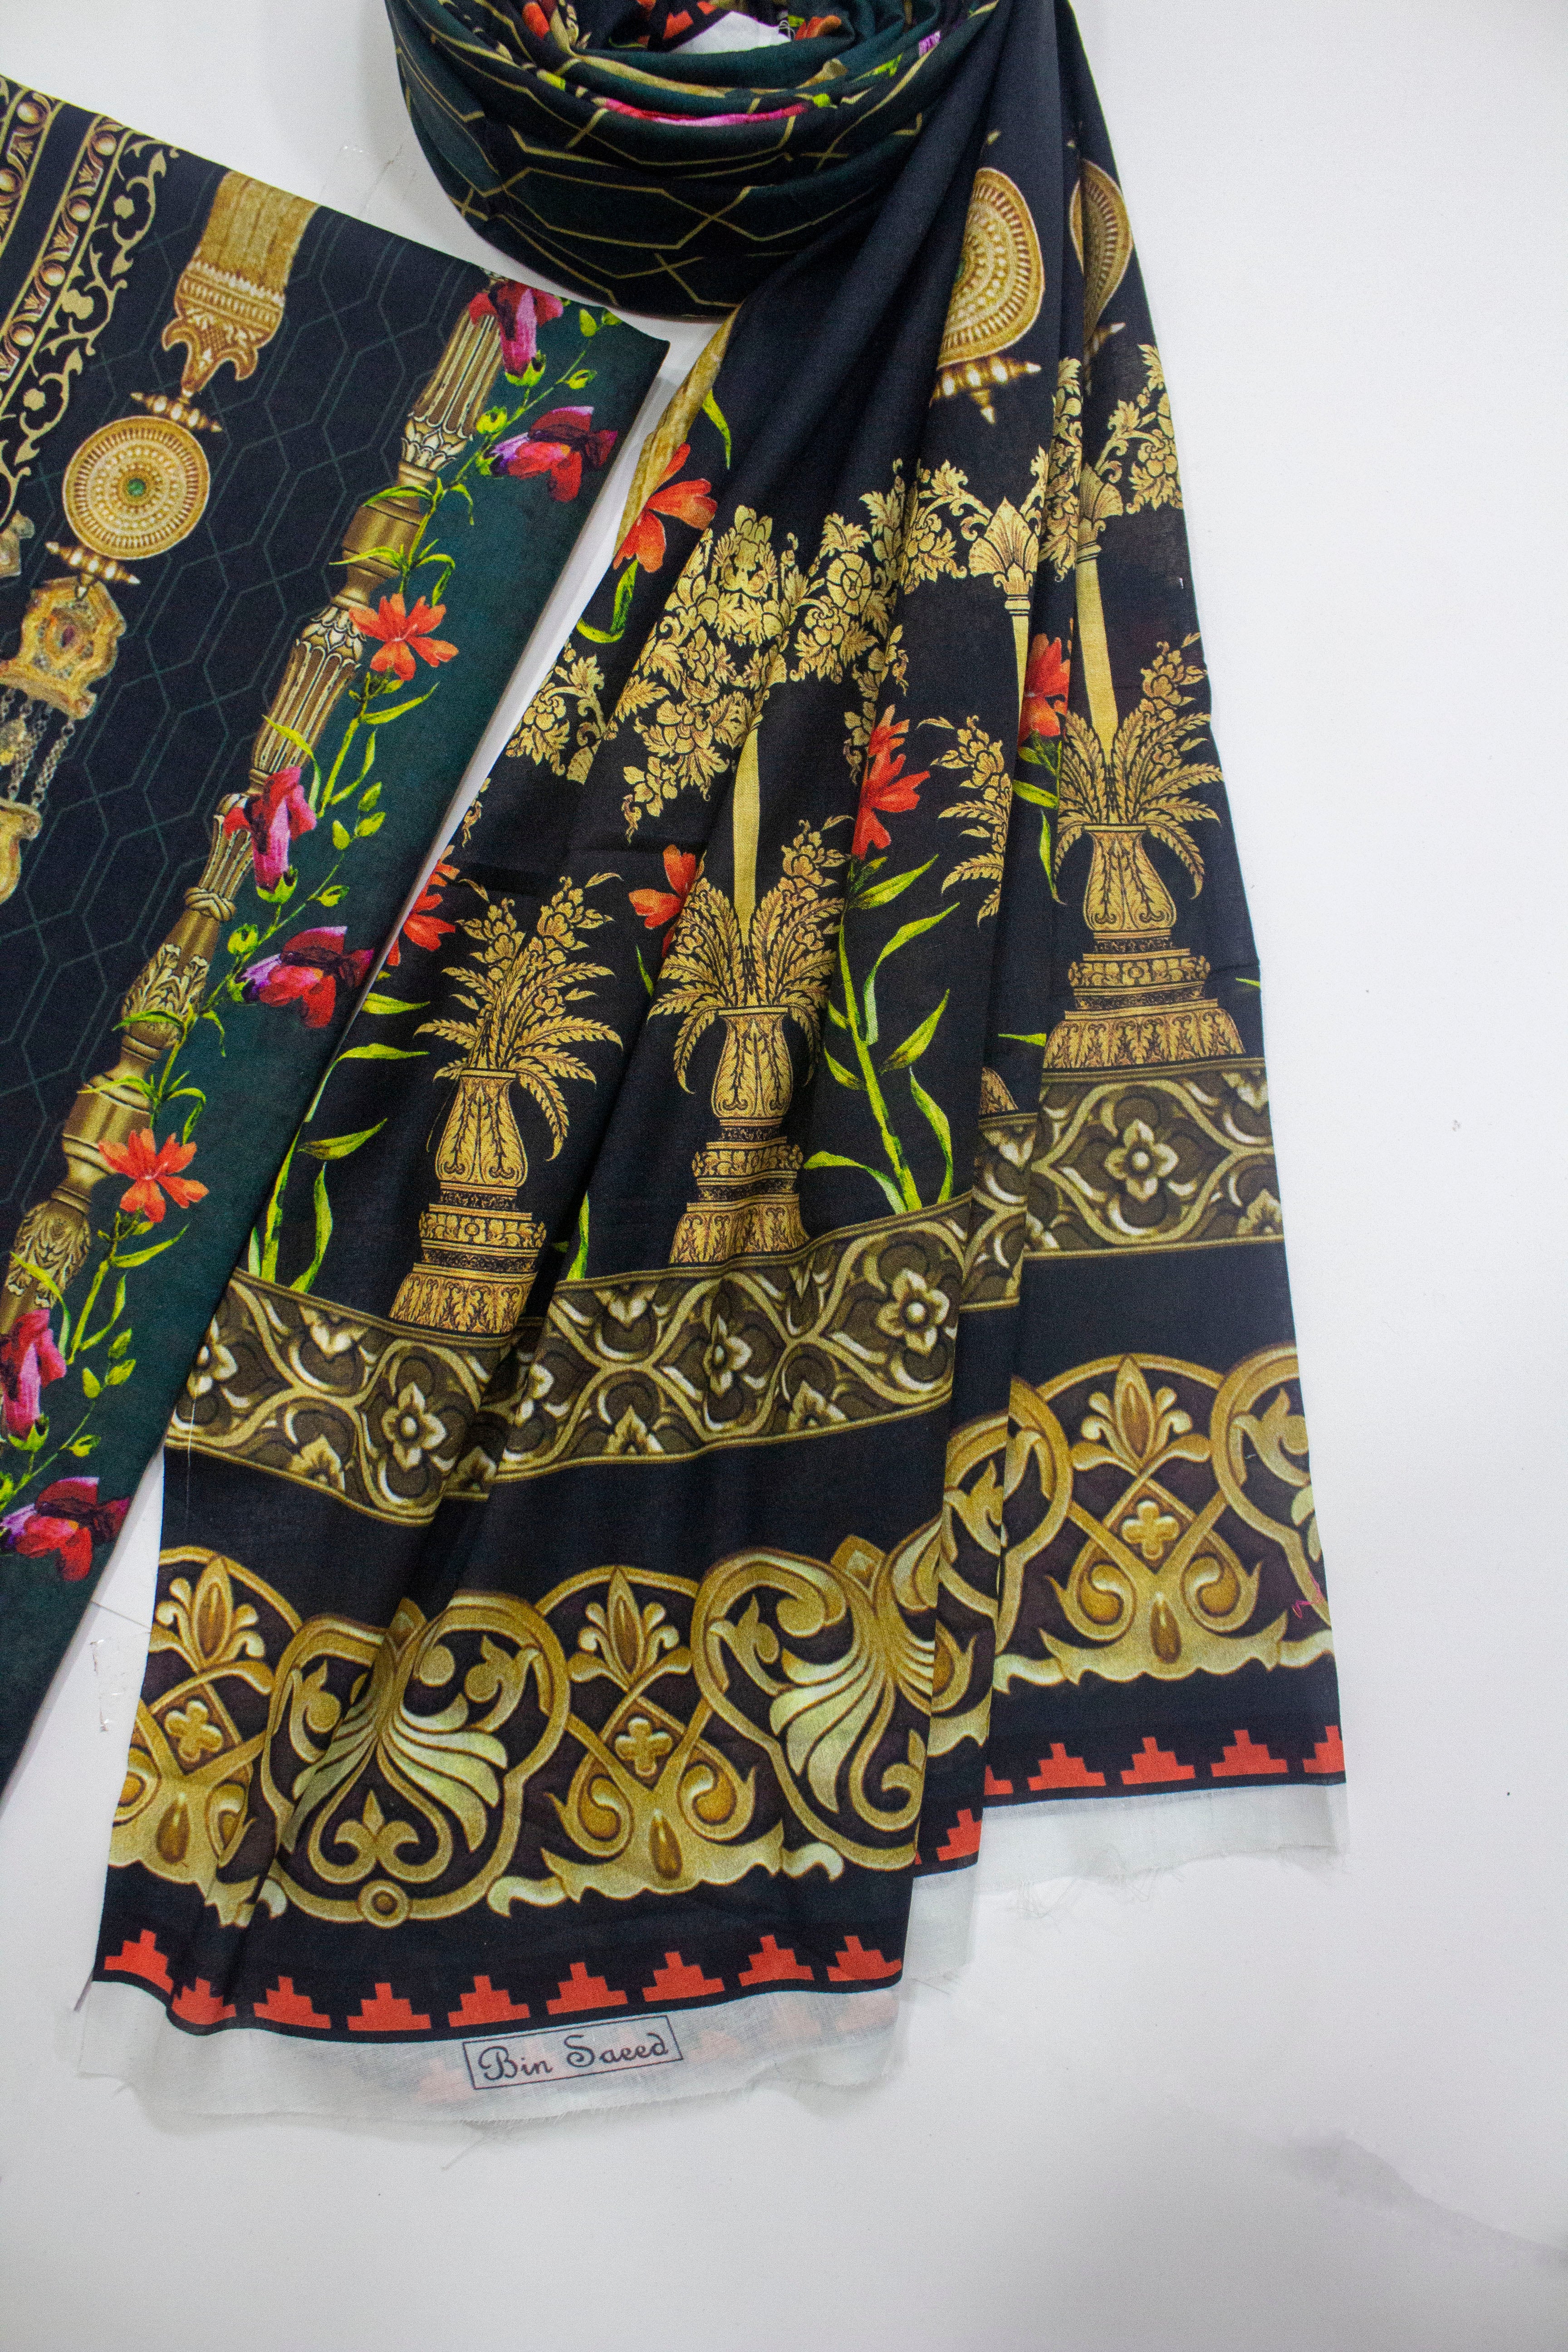 D-0903 - 3 Piece Digital Printed Unstitched Cotton Suit